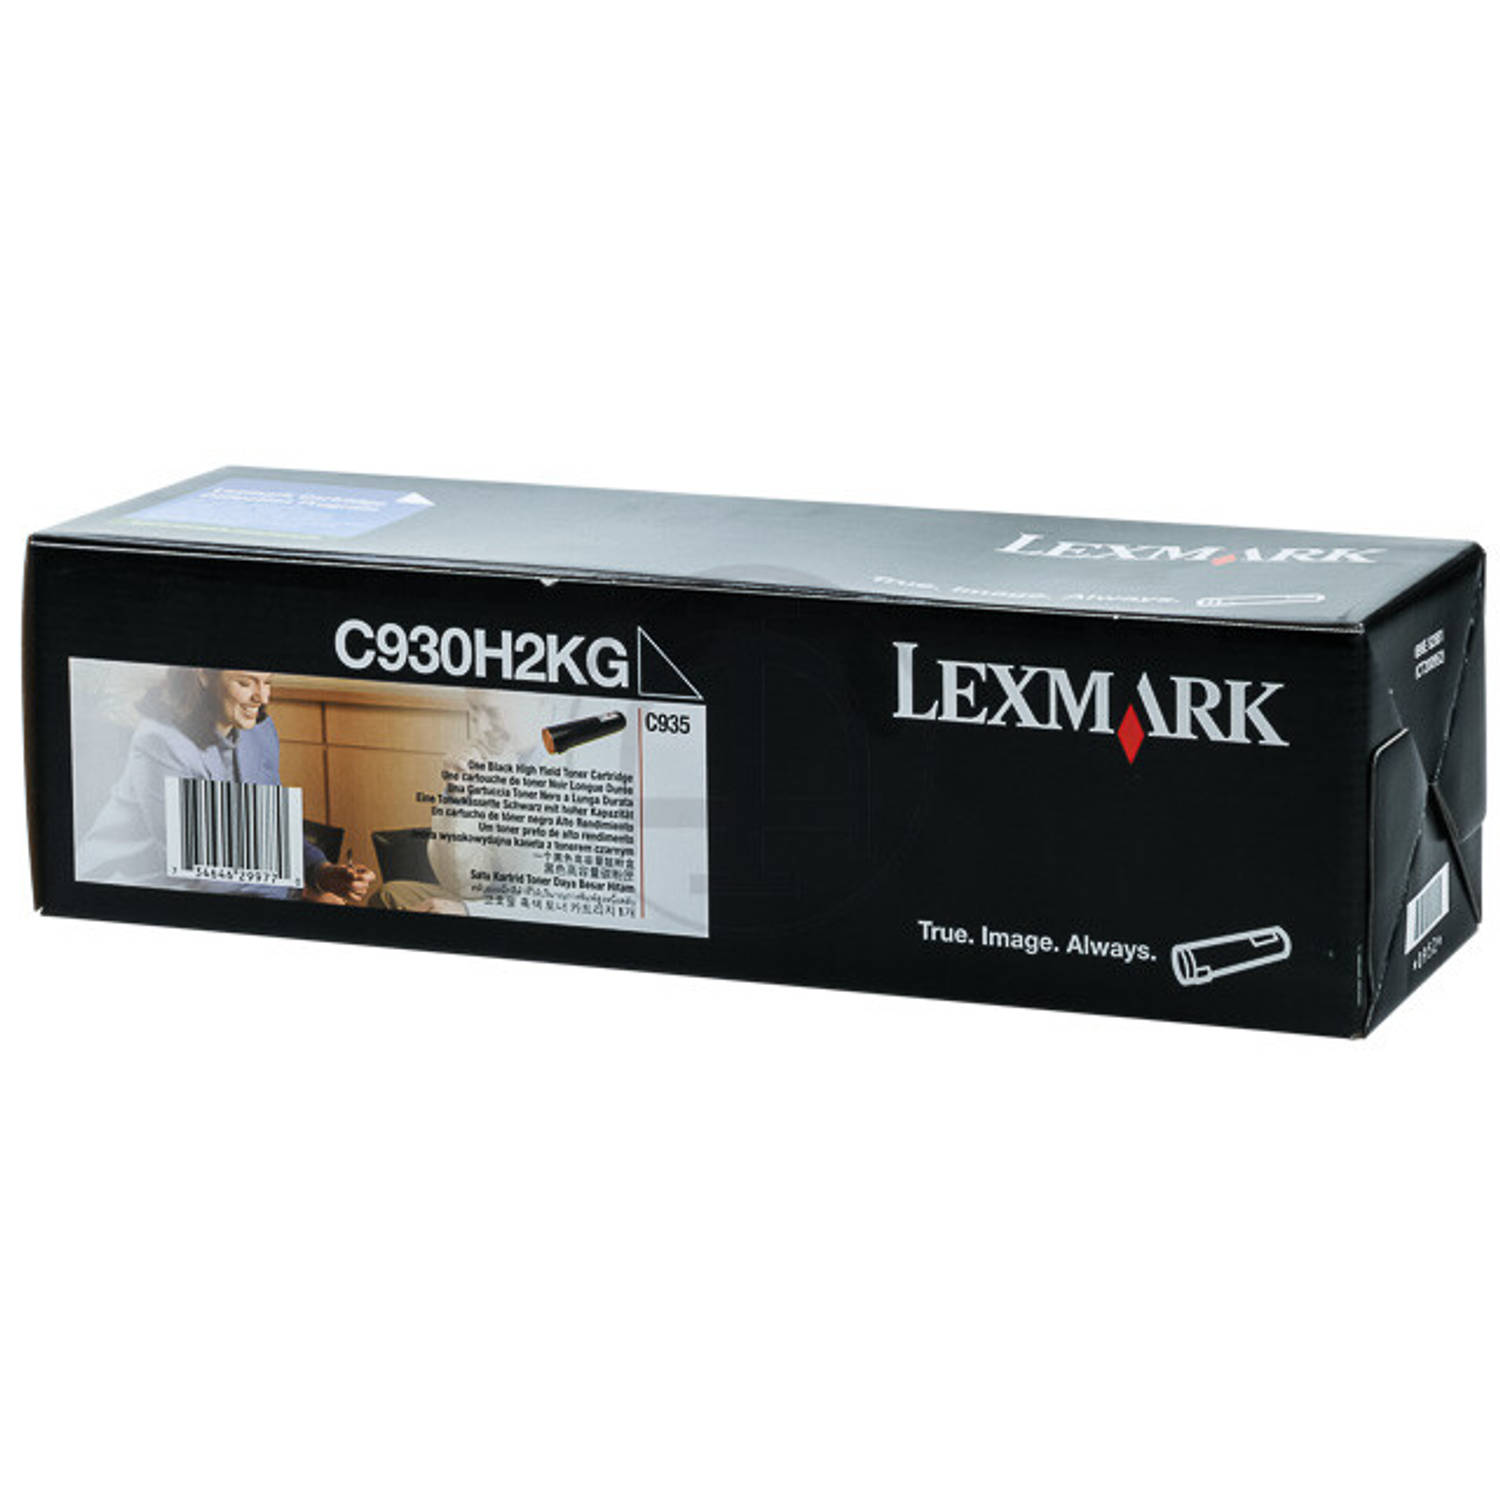 Lexmark C935 38K zwarte tonercartridge (C930H2KG)